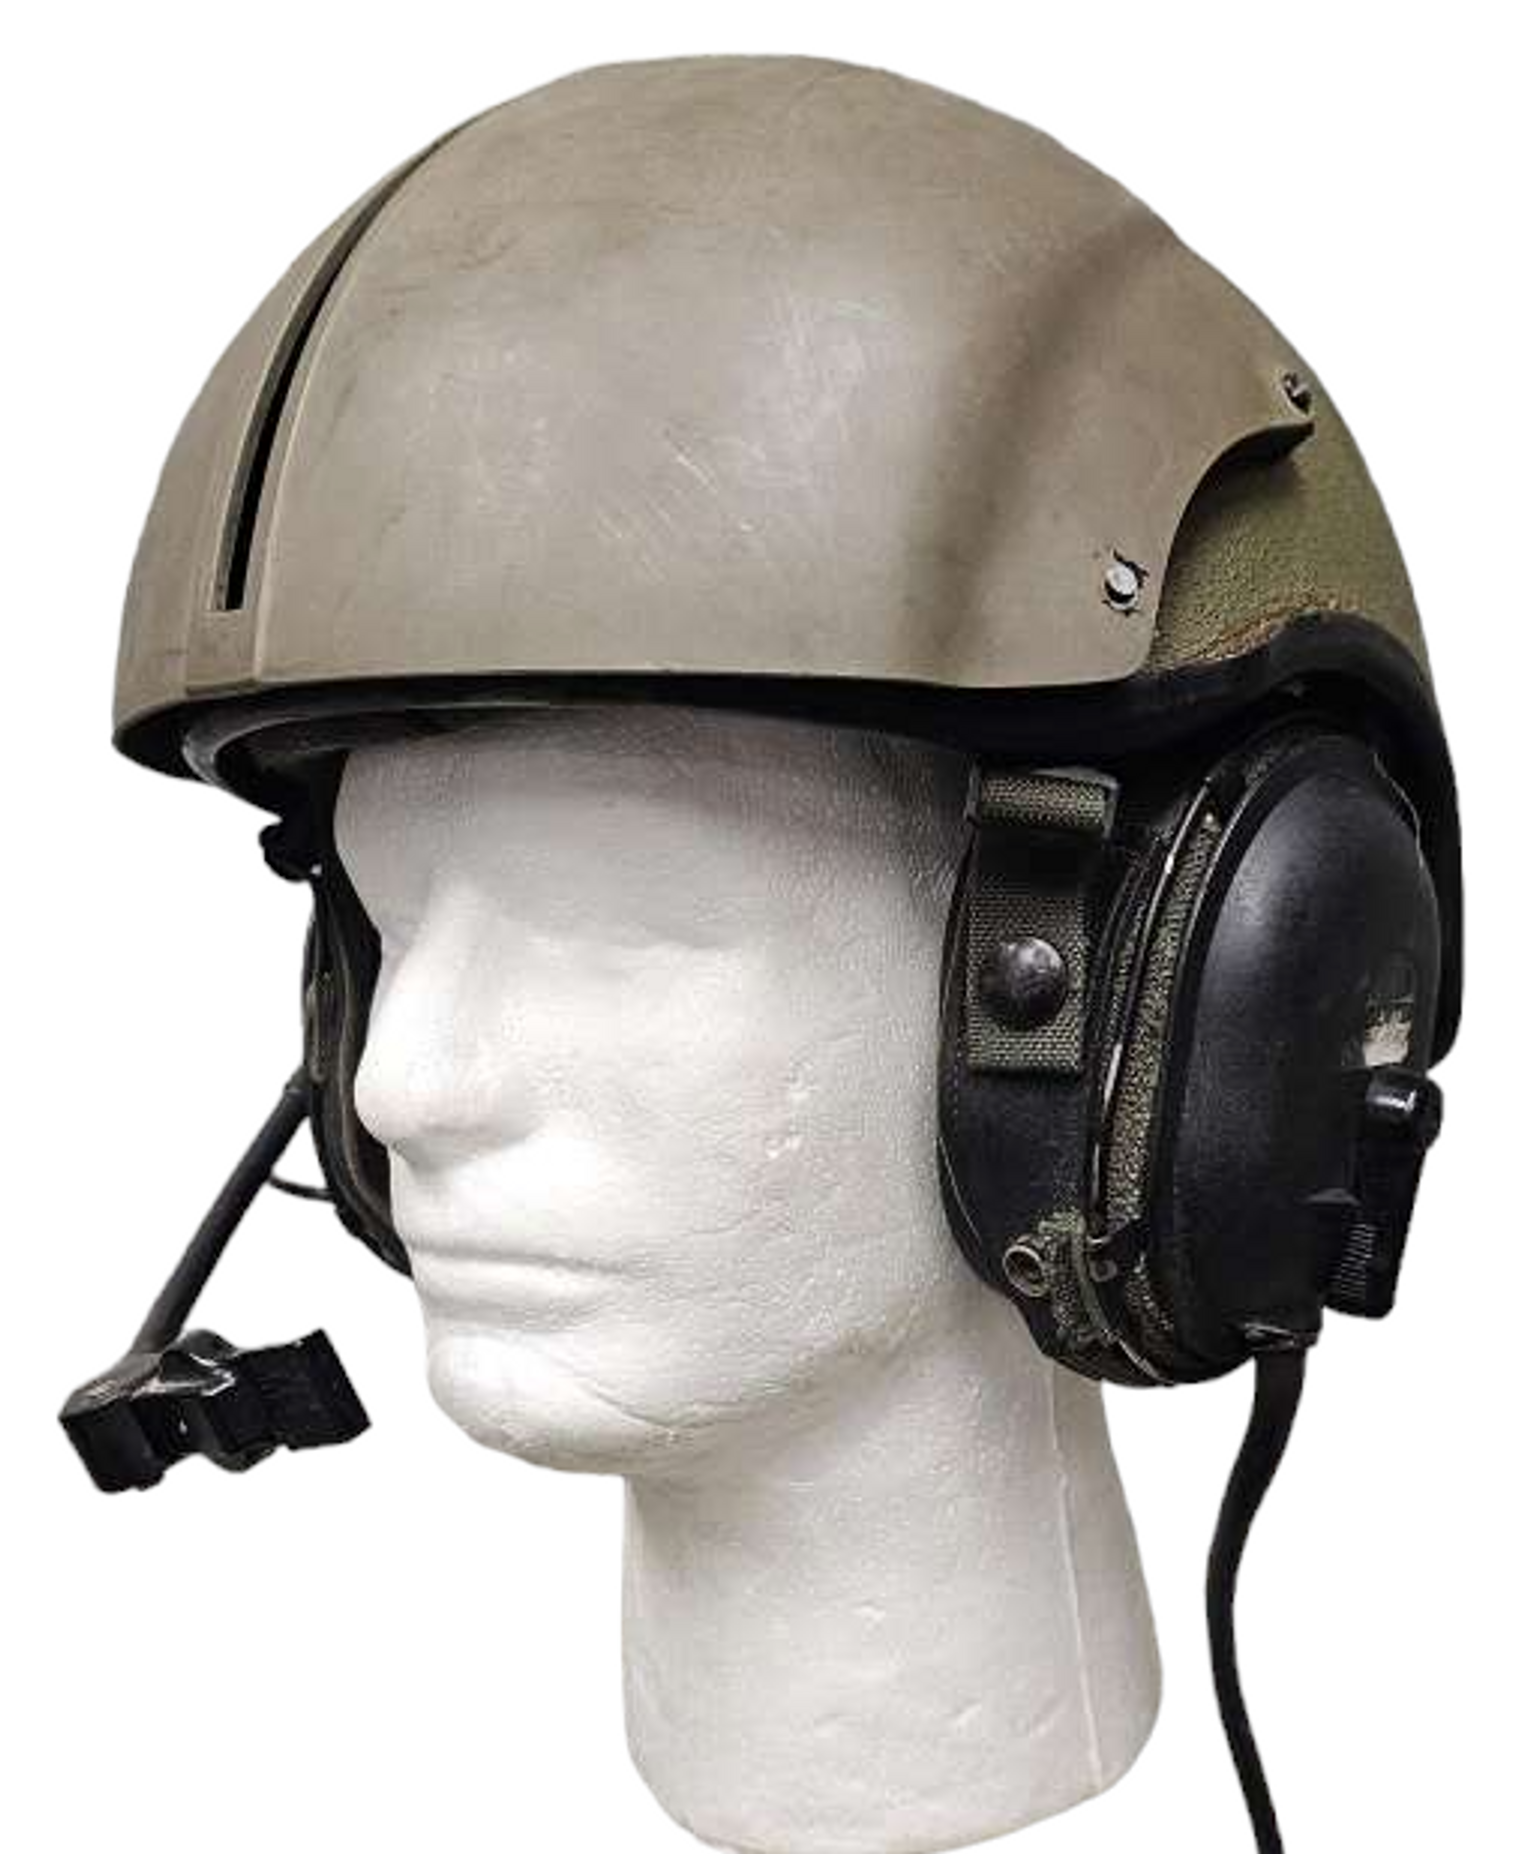 Gentex Combat Vehicle Crewman Helmet 